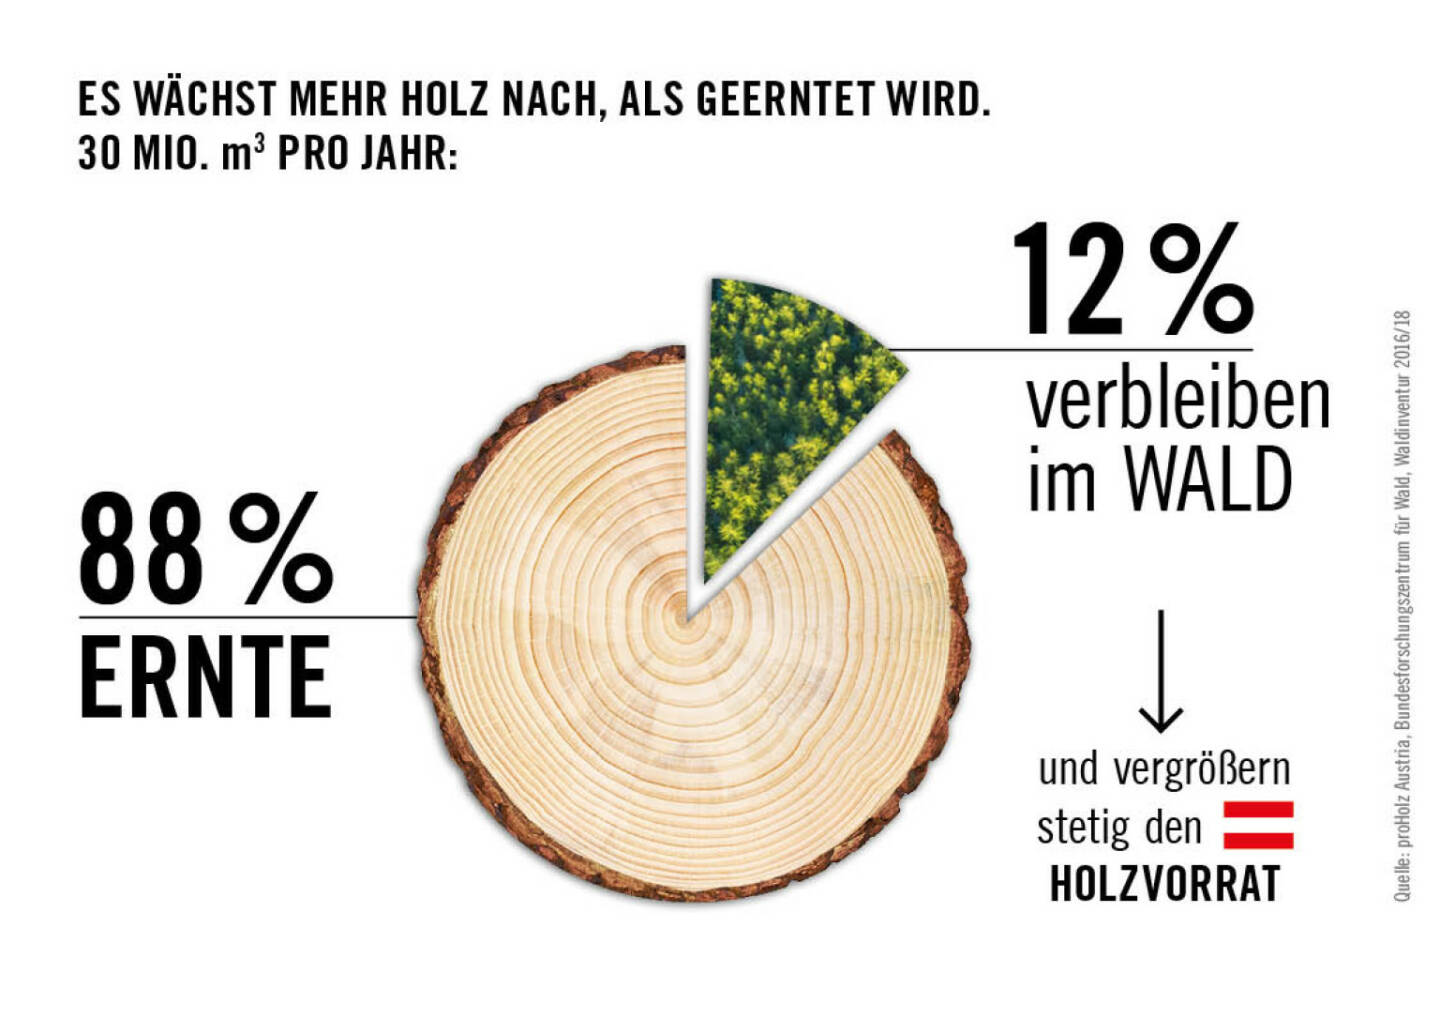 proHolz Austria - Arbeitsgemeinschaft der österreichischen Holzwirtschaft: proHolz Austria: Aktive Waldbewirtschaftung sichert den Klimaschutz, Fotocredit:Cayenne